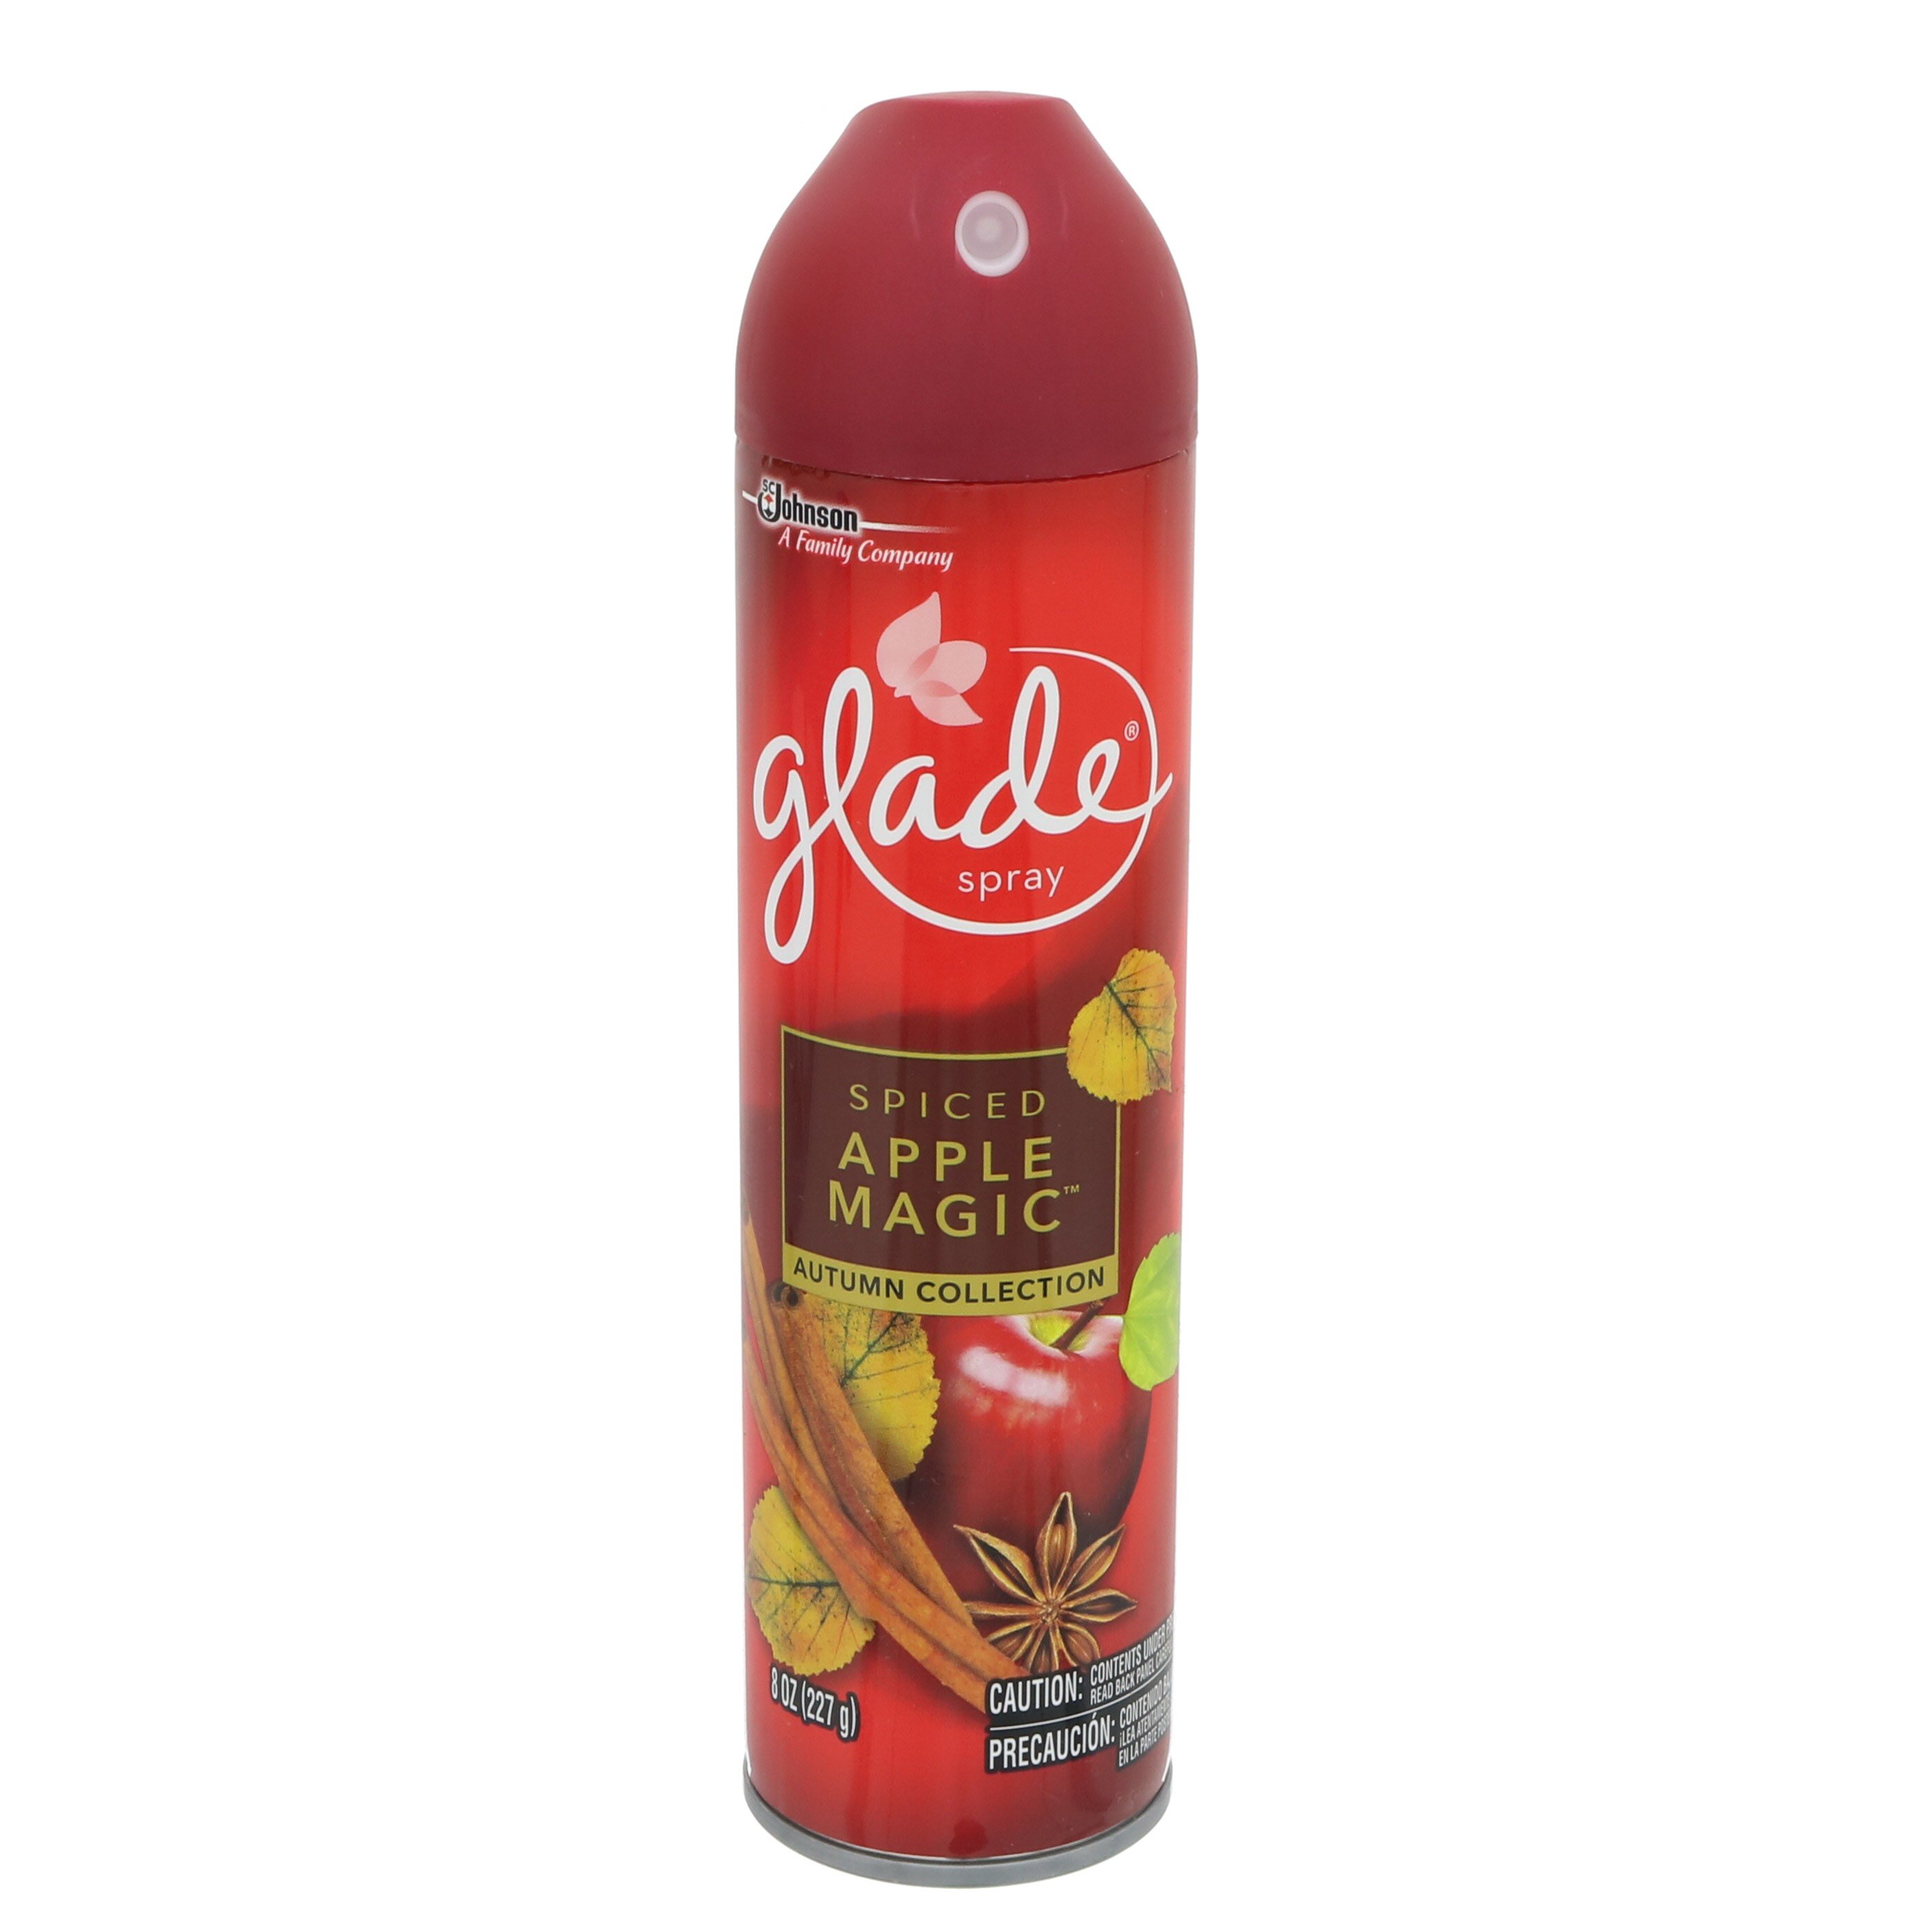 Glade Spiced Apple Magic Room Spray - Shop Air Fresheners at H-E-B